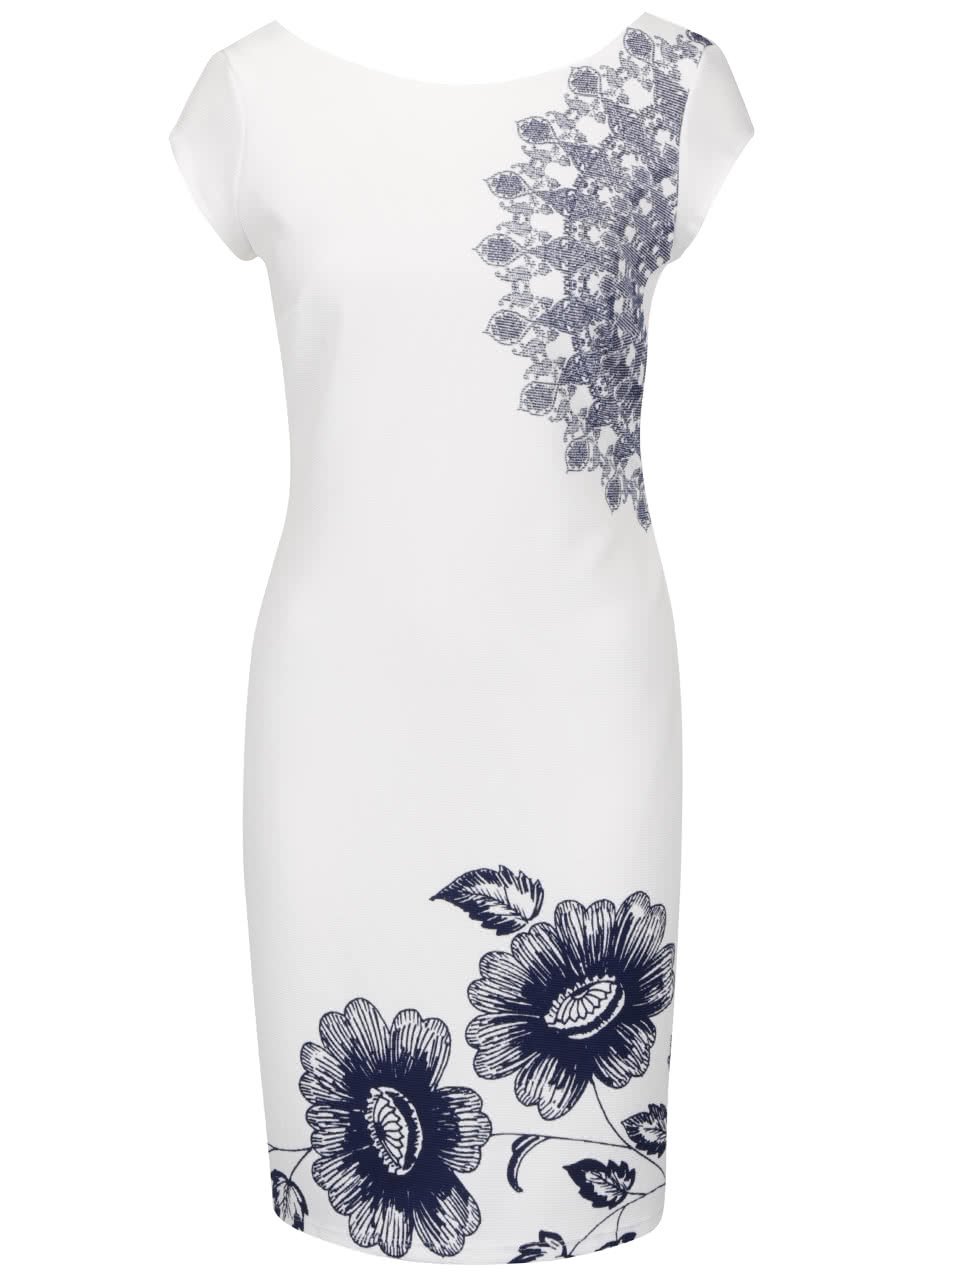 Krémové šaty s motivem květin a výstřihem na zádech Desigual Melisa